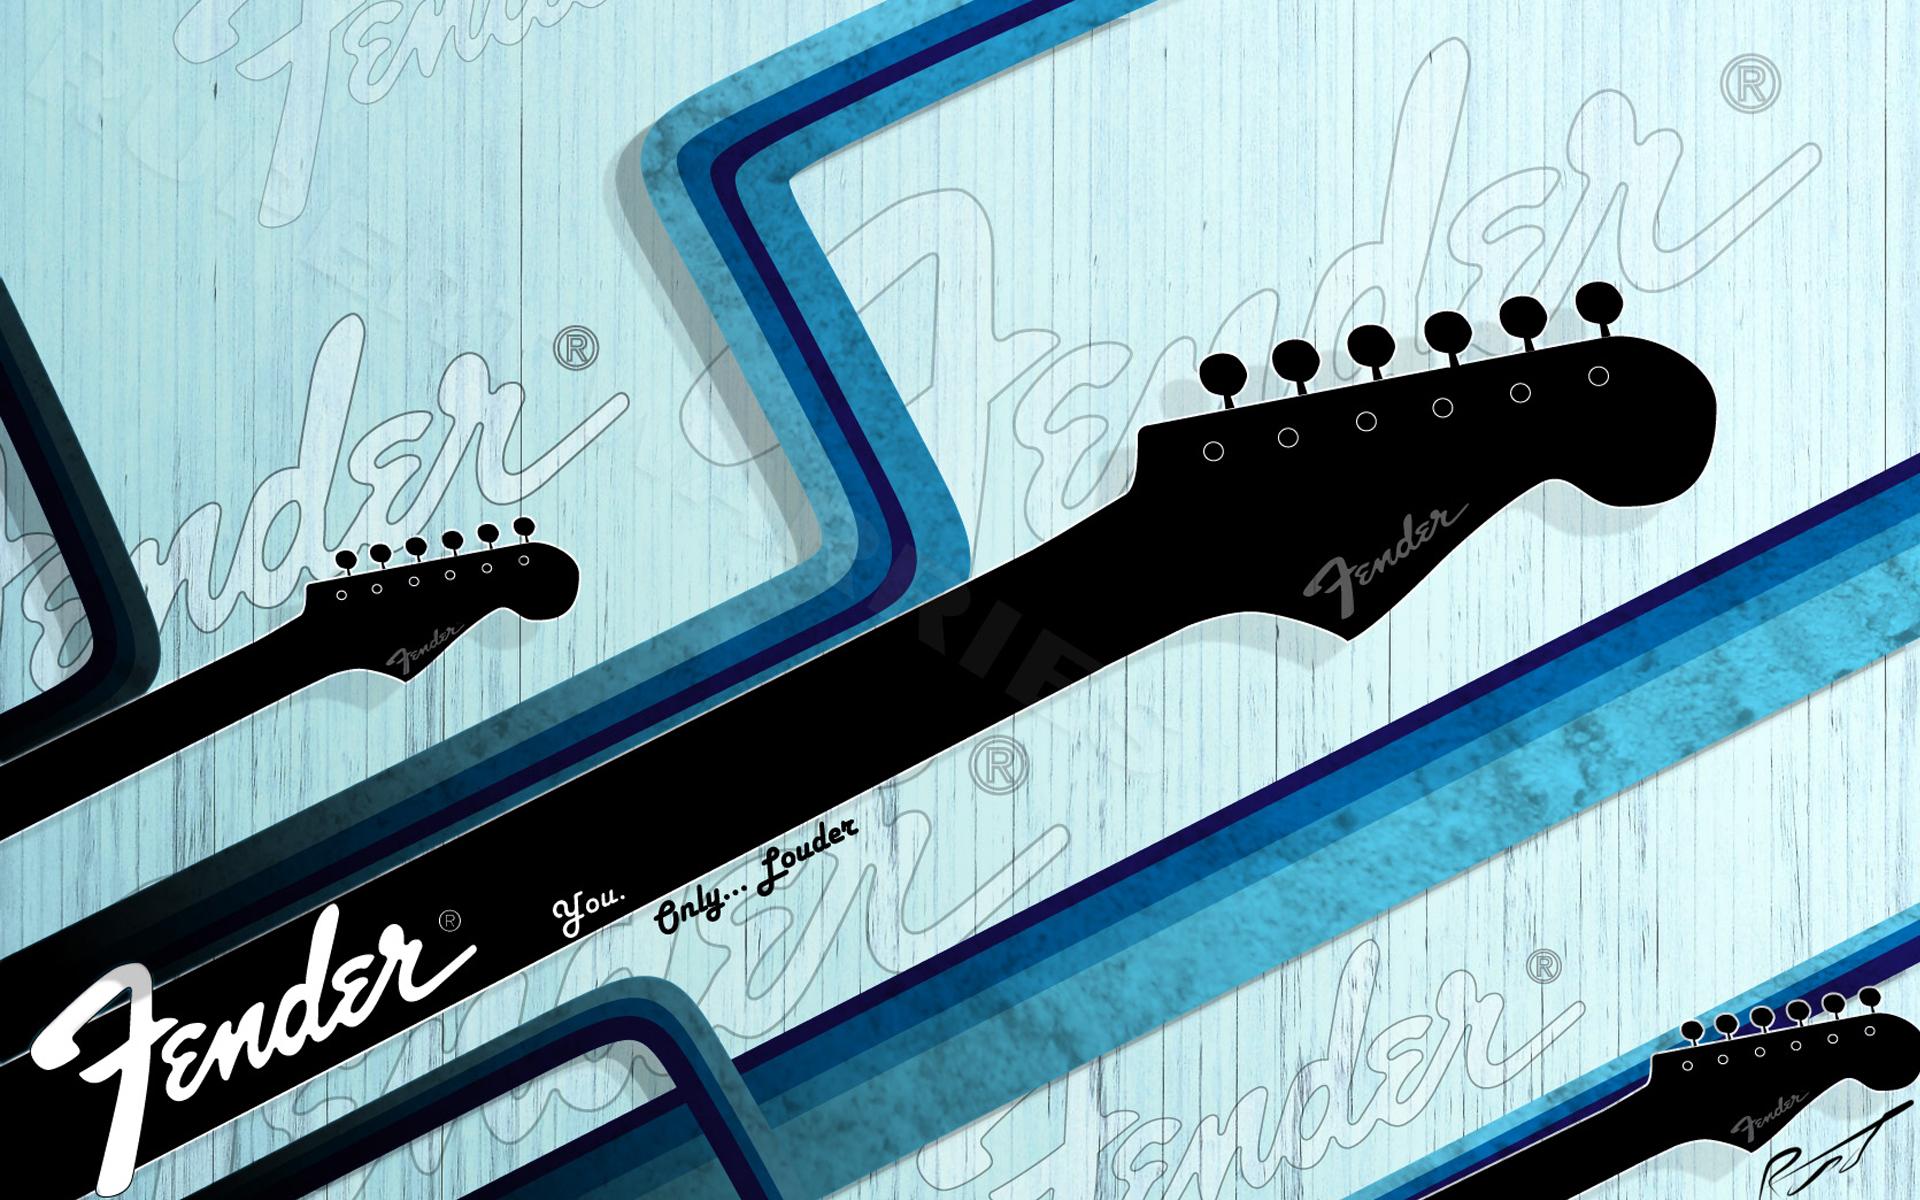 Free Download Fender Guitar Wallpaper 19x10 For Your Desktop Mobile Tablet Explore 50 Fender Strat Wallpaper Fender Stratocaster Wallpaper Fender Custom Shop Wallpaper Fender Desktop Wallpaper